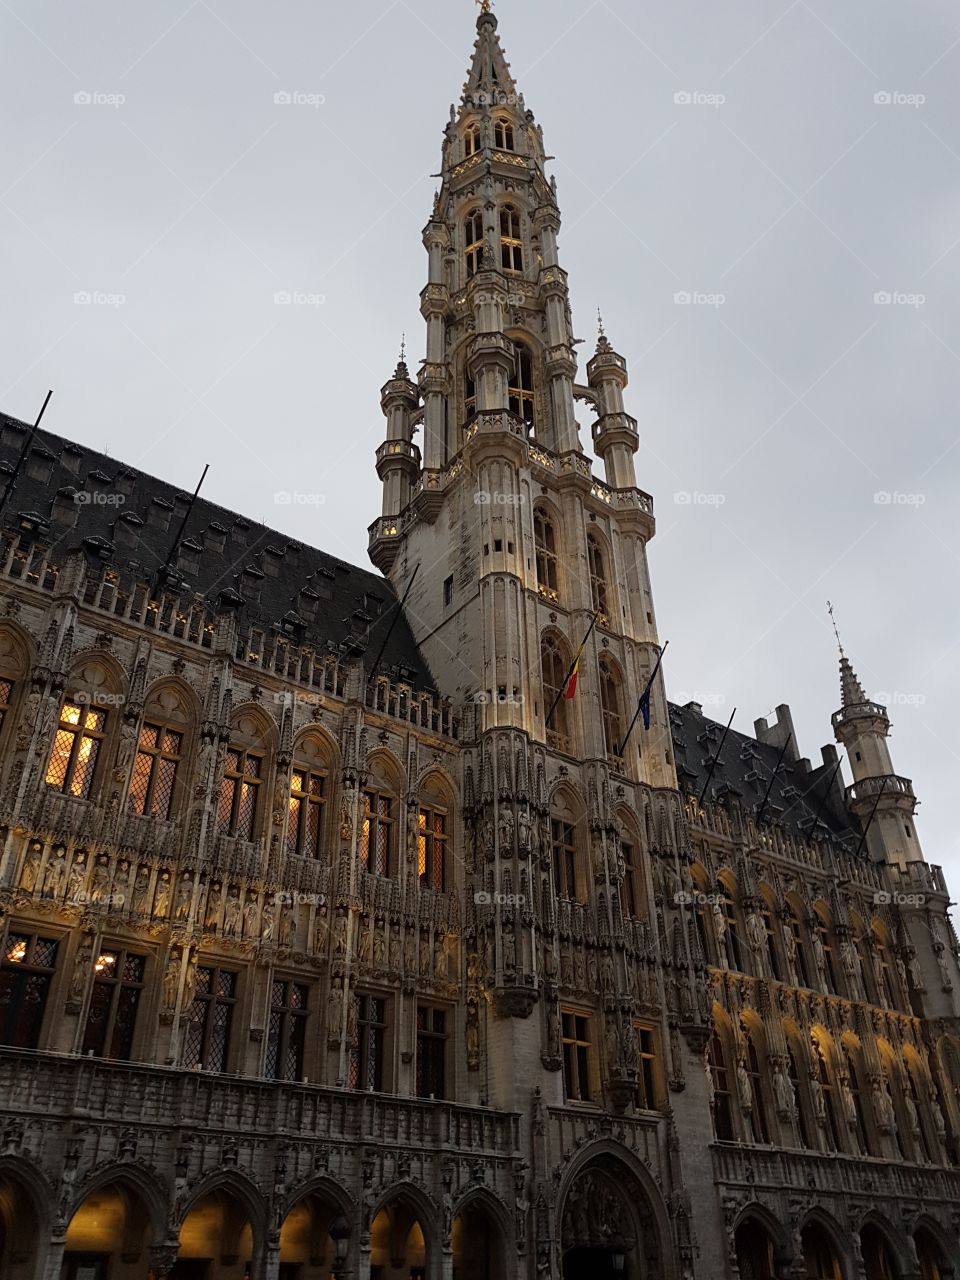 Grand Place Belgium